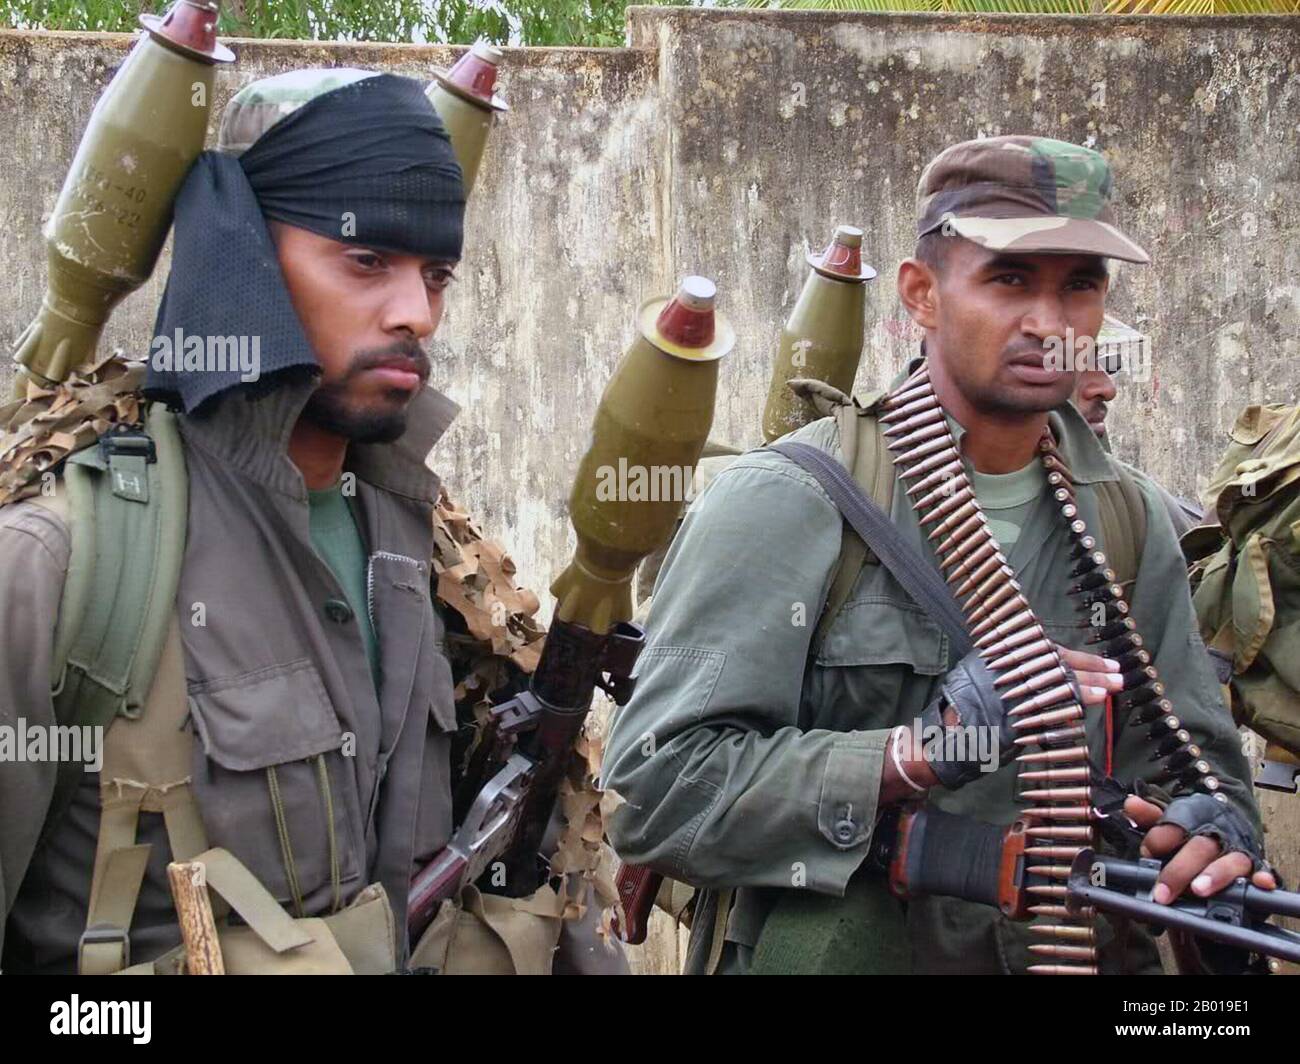 Sri Lanka : des soldats de l'Armée sri lankaise lourdement armés se préparant à progresser dans les positions des LTTE, c. 2008. Photo du ministère de la Défense du Sri Lanka (Licence CC By-sa 3,0). La guerre civile sri-lankaise est un conflit qui a eu lieu sur l'île de Sri Lanka. À partir du 23 juin 1983, il y a eu une insurrection sans fin contre le gouvernement par les Tigres de libération de l'Eelam tamoul (LTTE, également connus sous le nom de Tigres tamouls et d'autres groupes rebelles), Organisation militante séparatiste qui a lutté pour créer un État tamoul indépendant nommé Tamil Eelam dans le nord et l'est de l'île. Banque D'Images